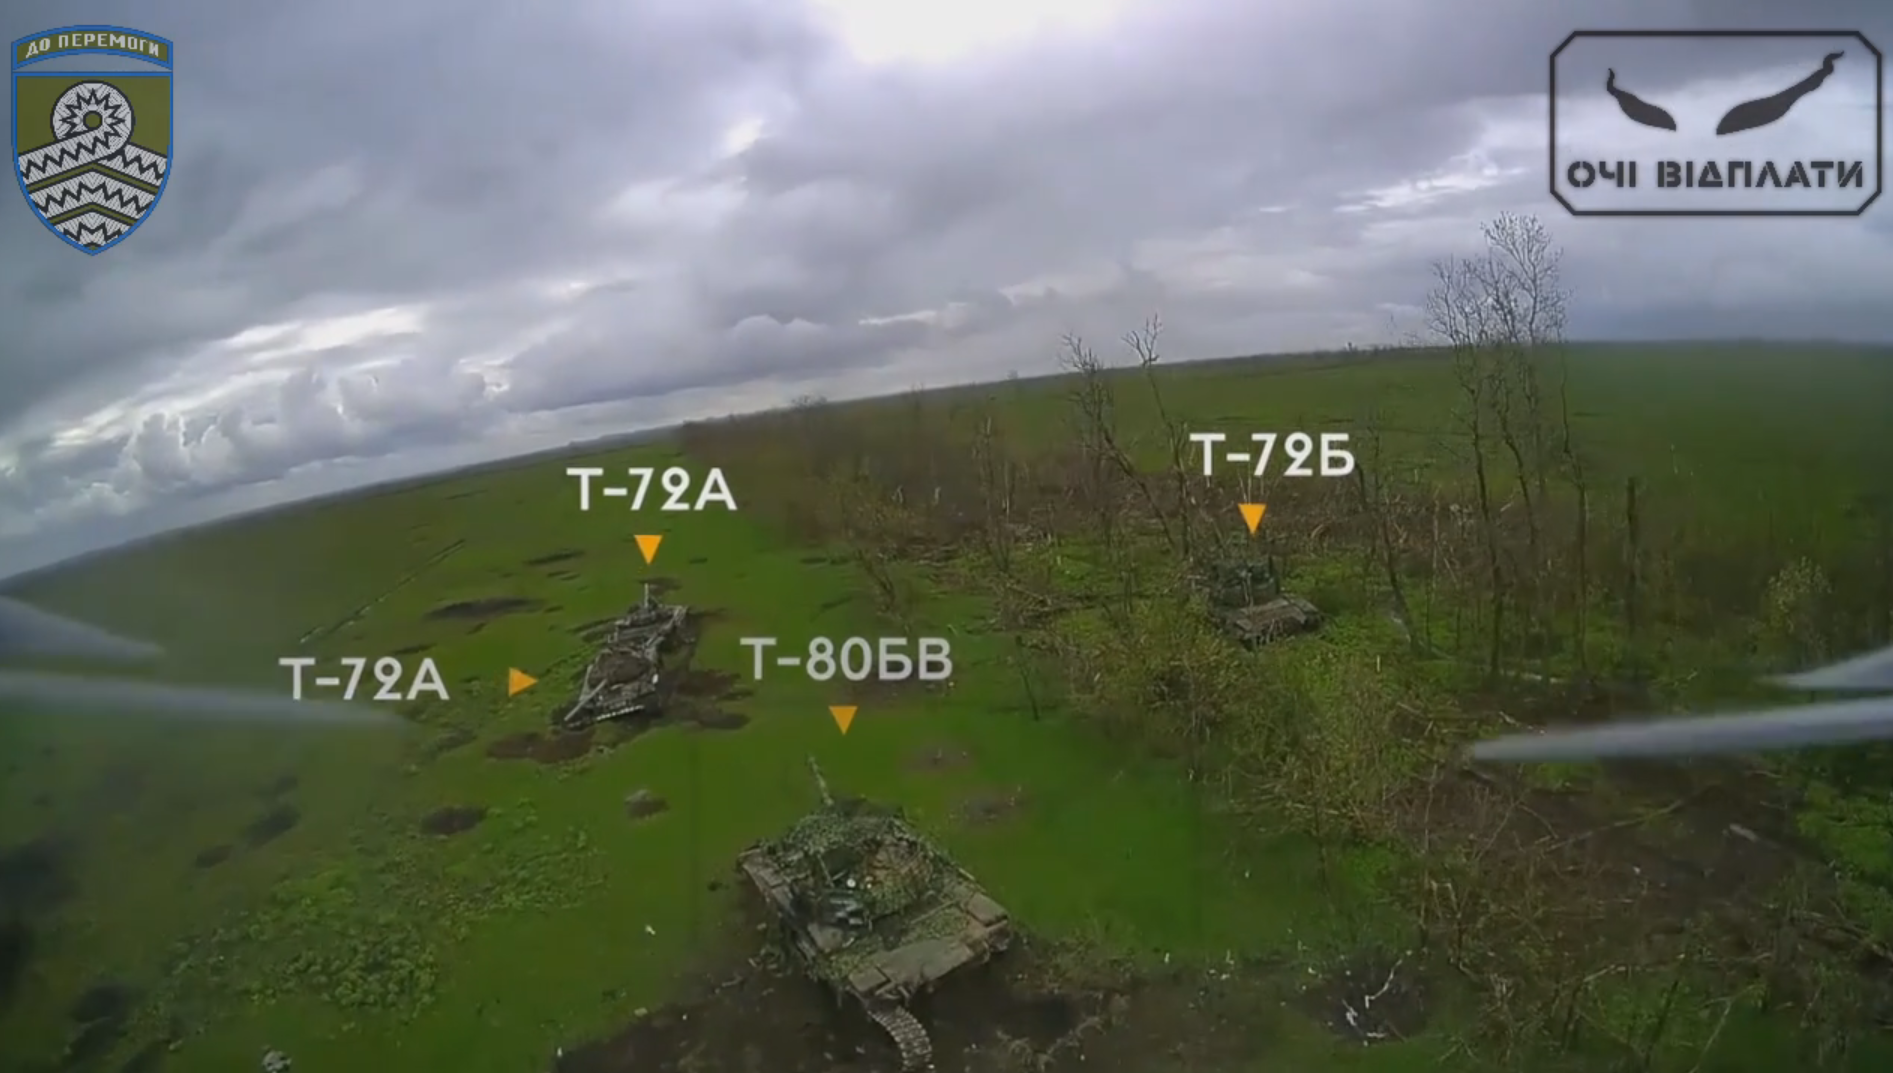 Des drones FPV ukrainiens coûtant 1 000 dollars ont touché trois chars russes T-80BV, T-72A et T-72B d'une valeur de plusieurs millions de dollars.